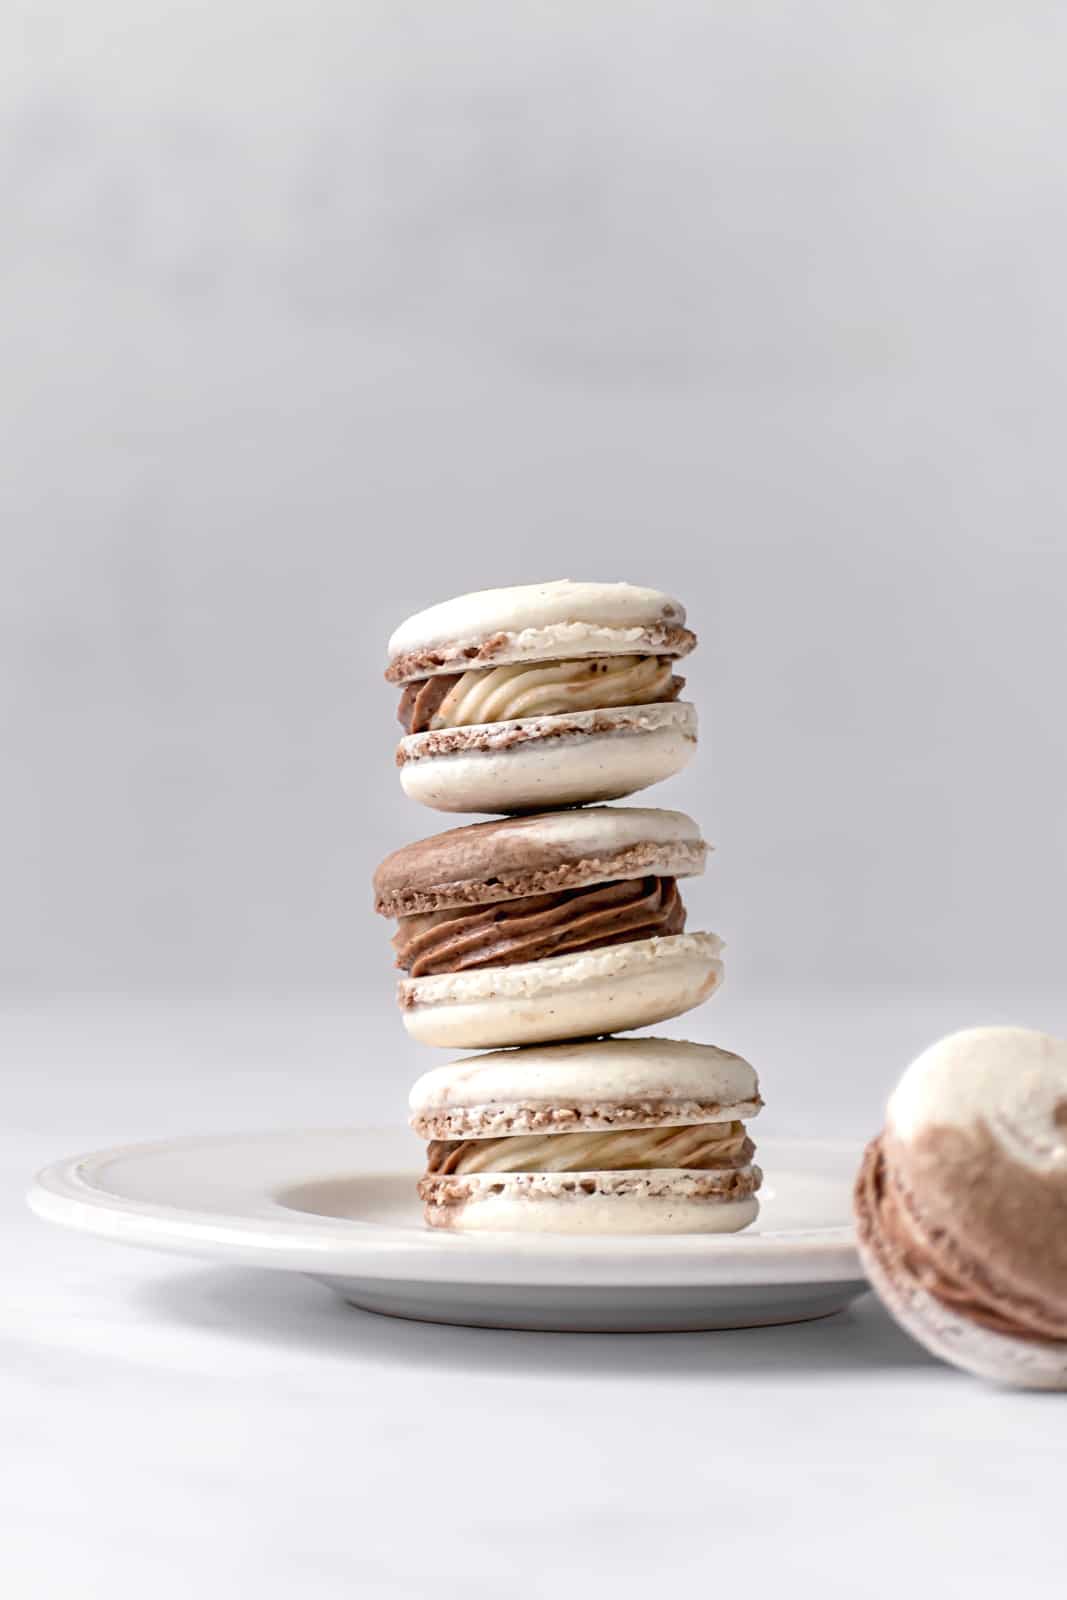 three Chocolate & Vanilla Swirled Macarons stacked on a white plate.